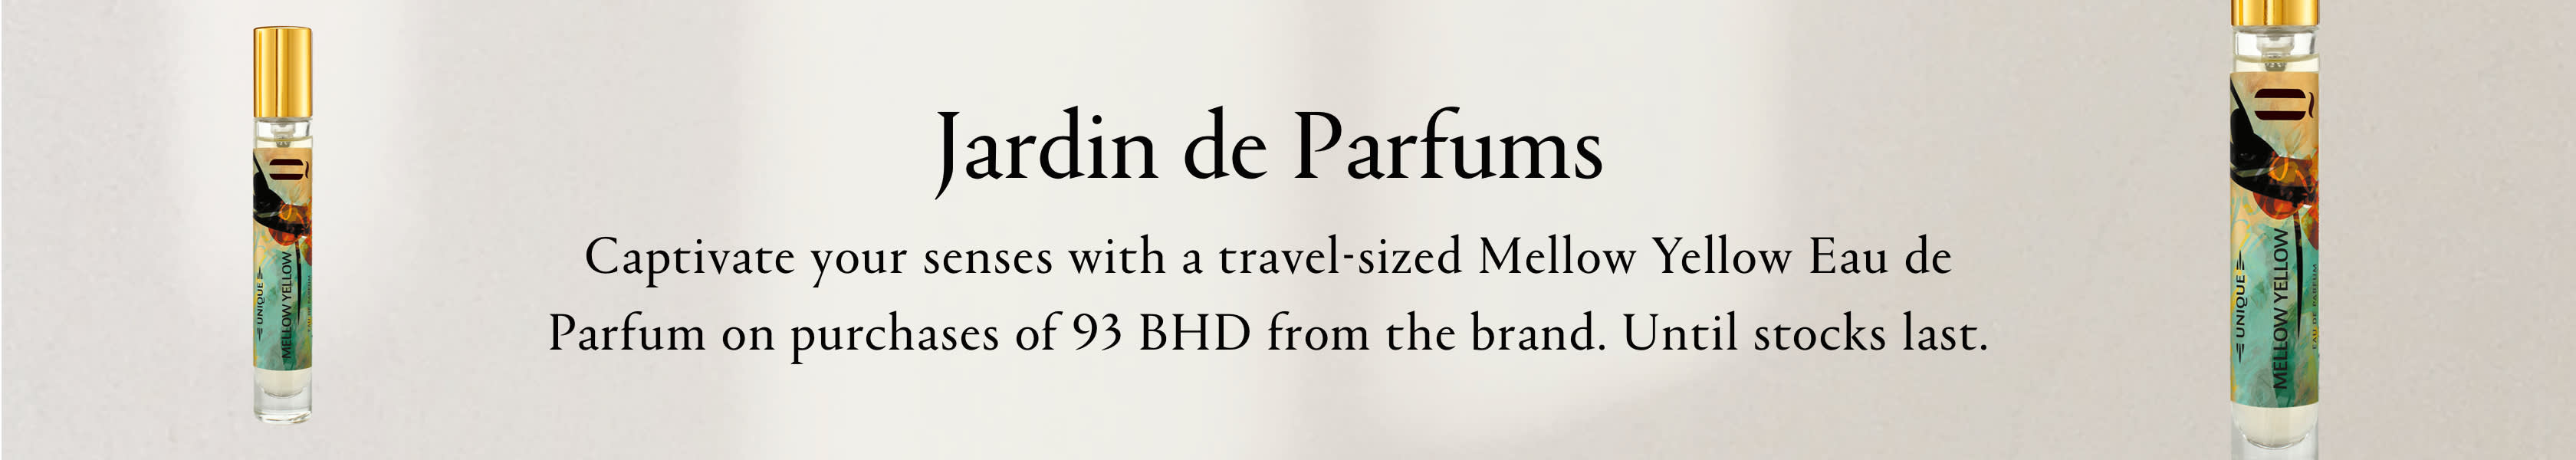 Jardin de Parfums GWP PDP+PLP Web EN BHD WK9